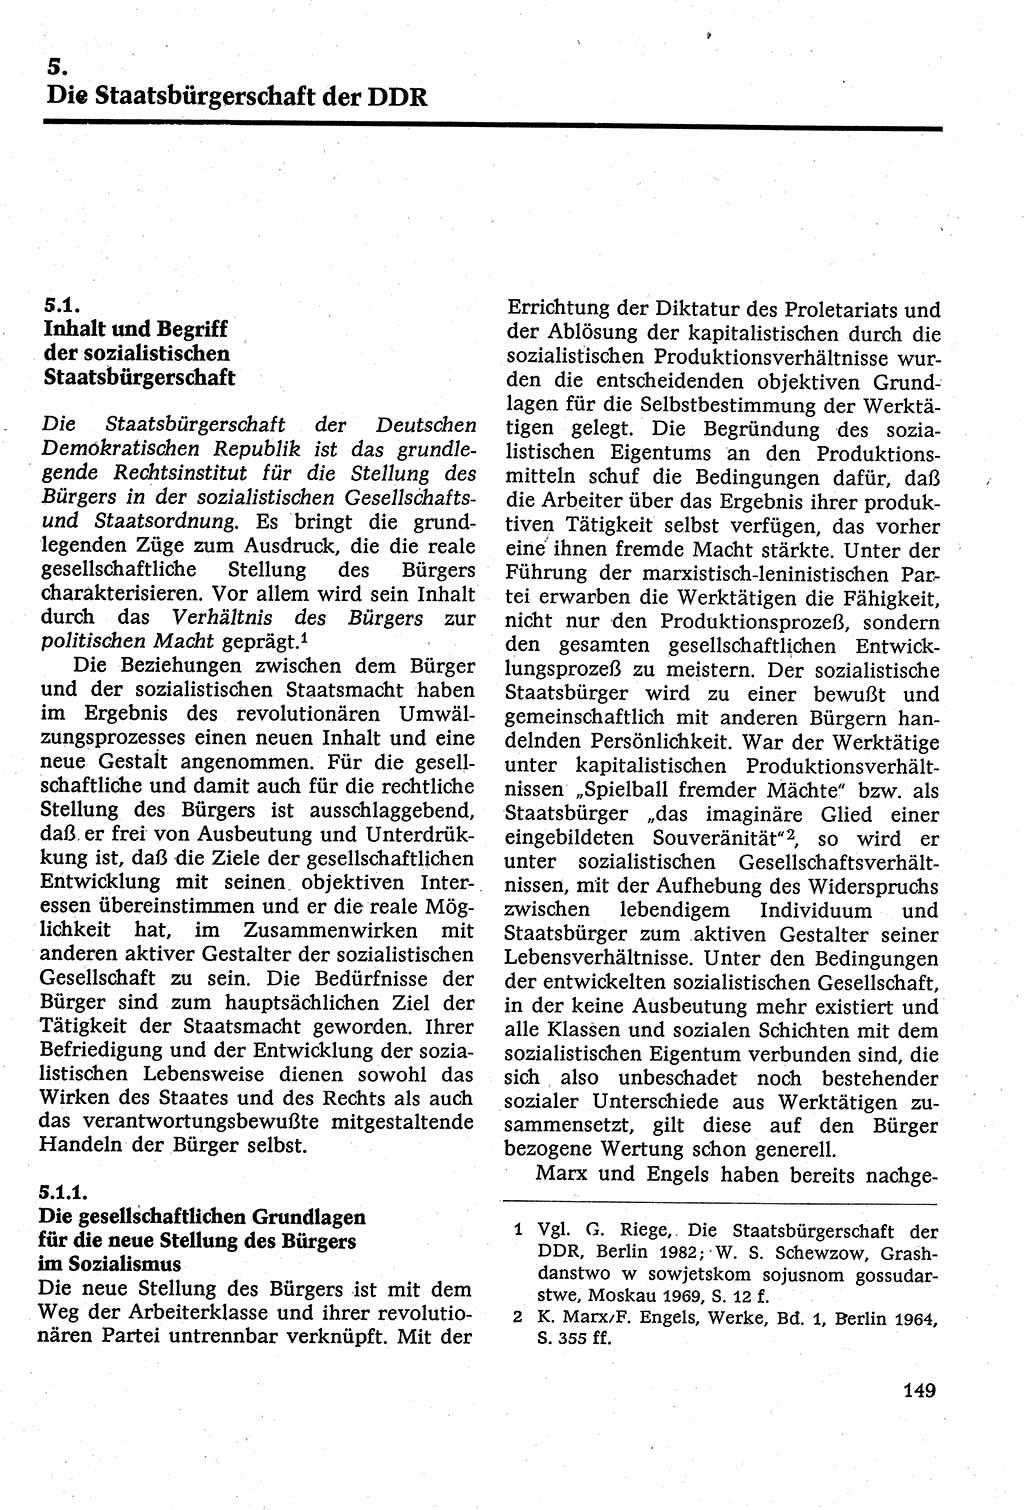 Staatsrecht der DDR [Deutsche Demokratische Republik (DDR)], Lehrbuch 1984, Seite 149 (St.-R. DDR Lb. 1984, S. 149)